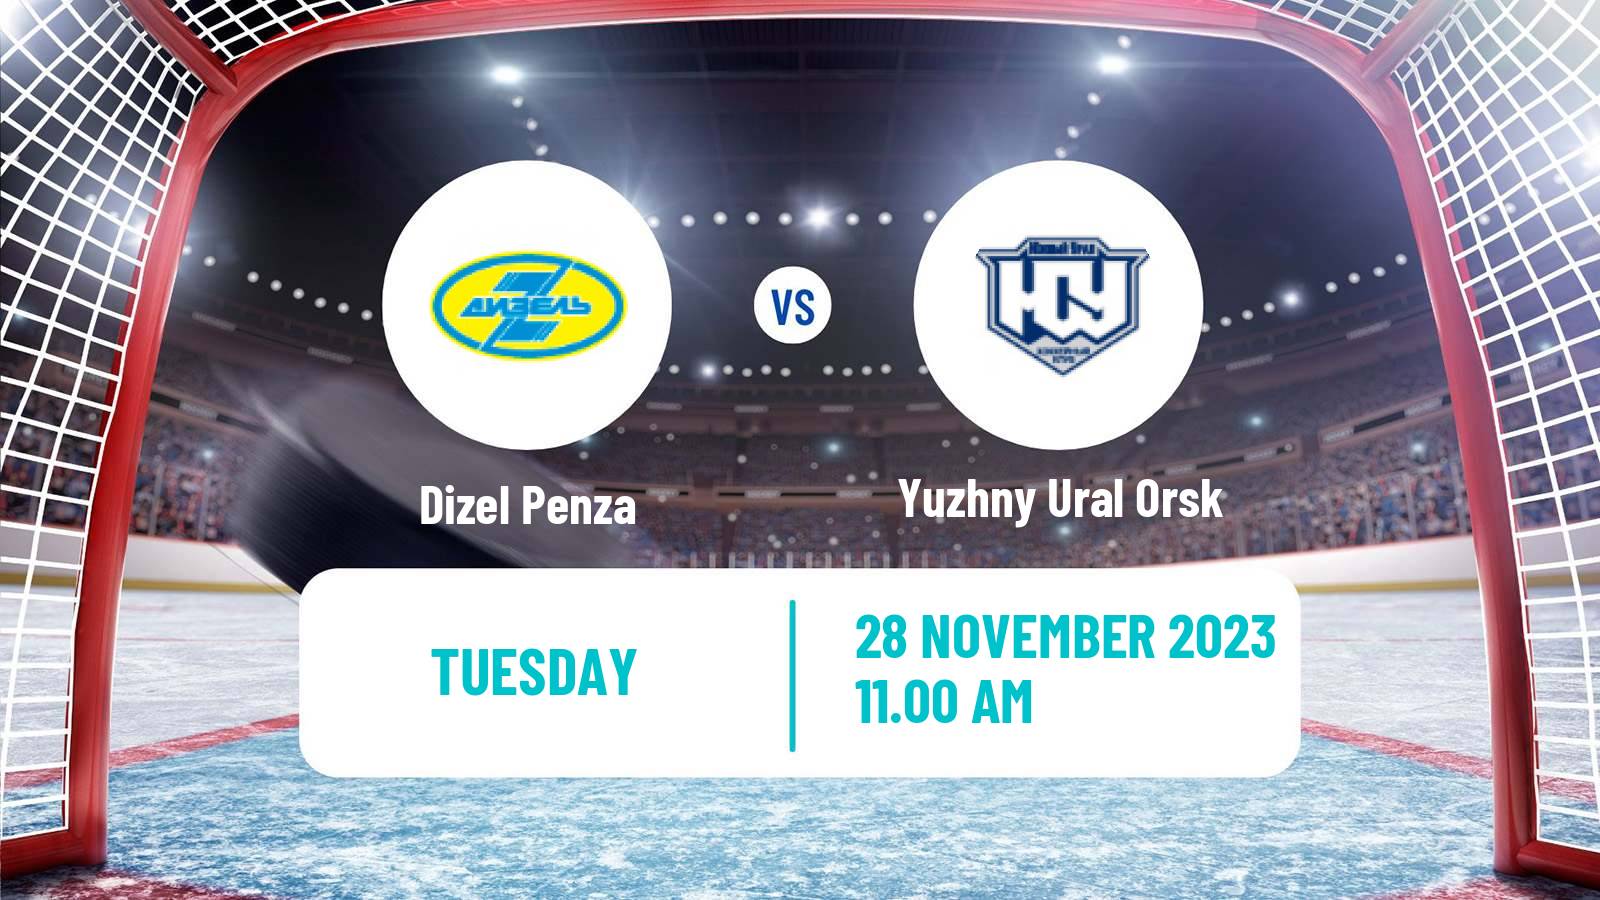 Hockey VHL Dizel Penza - Yuzhny Ural Orsk